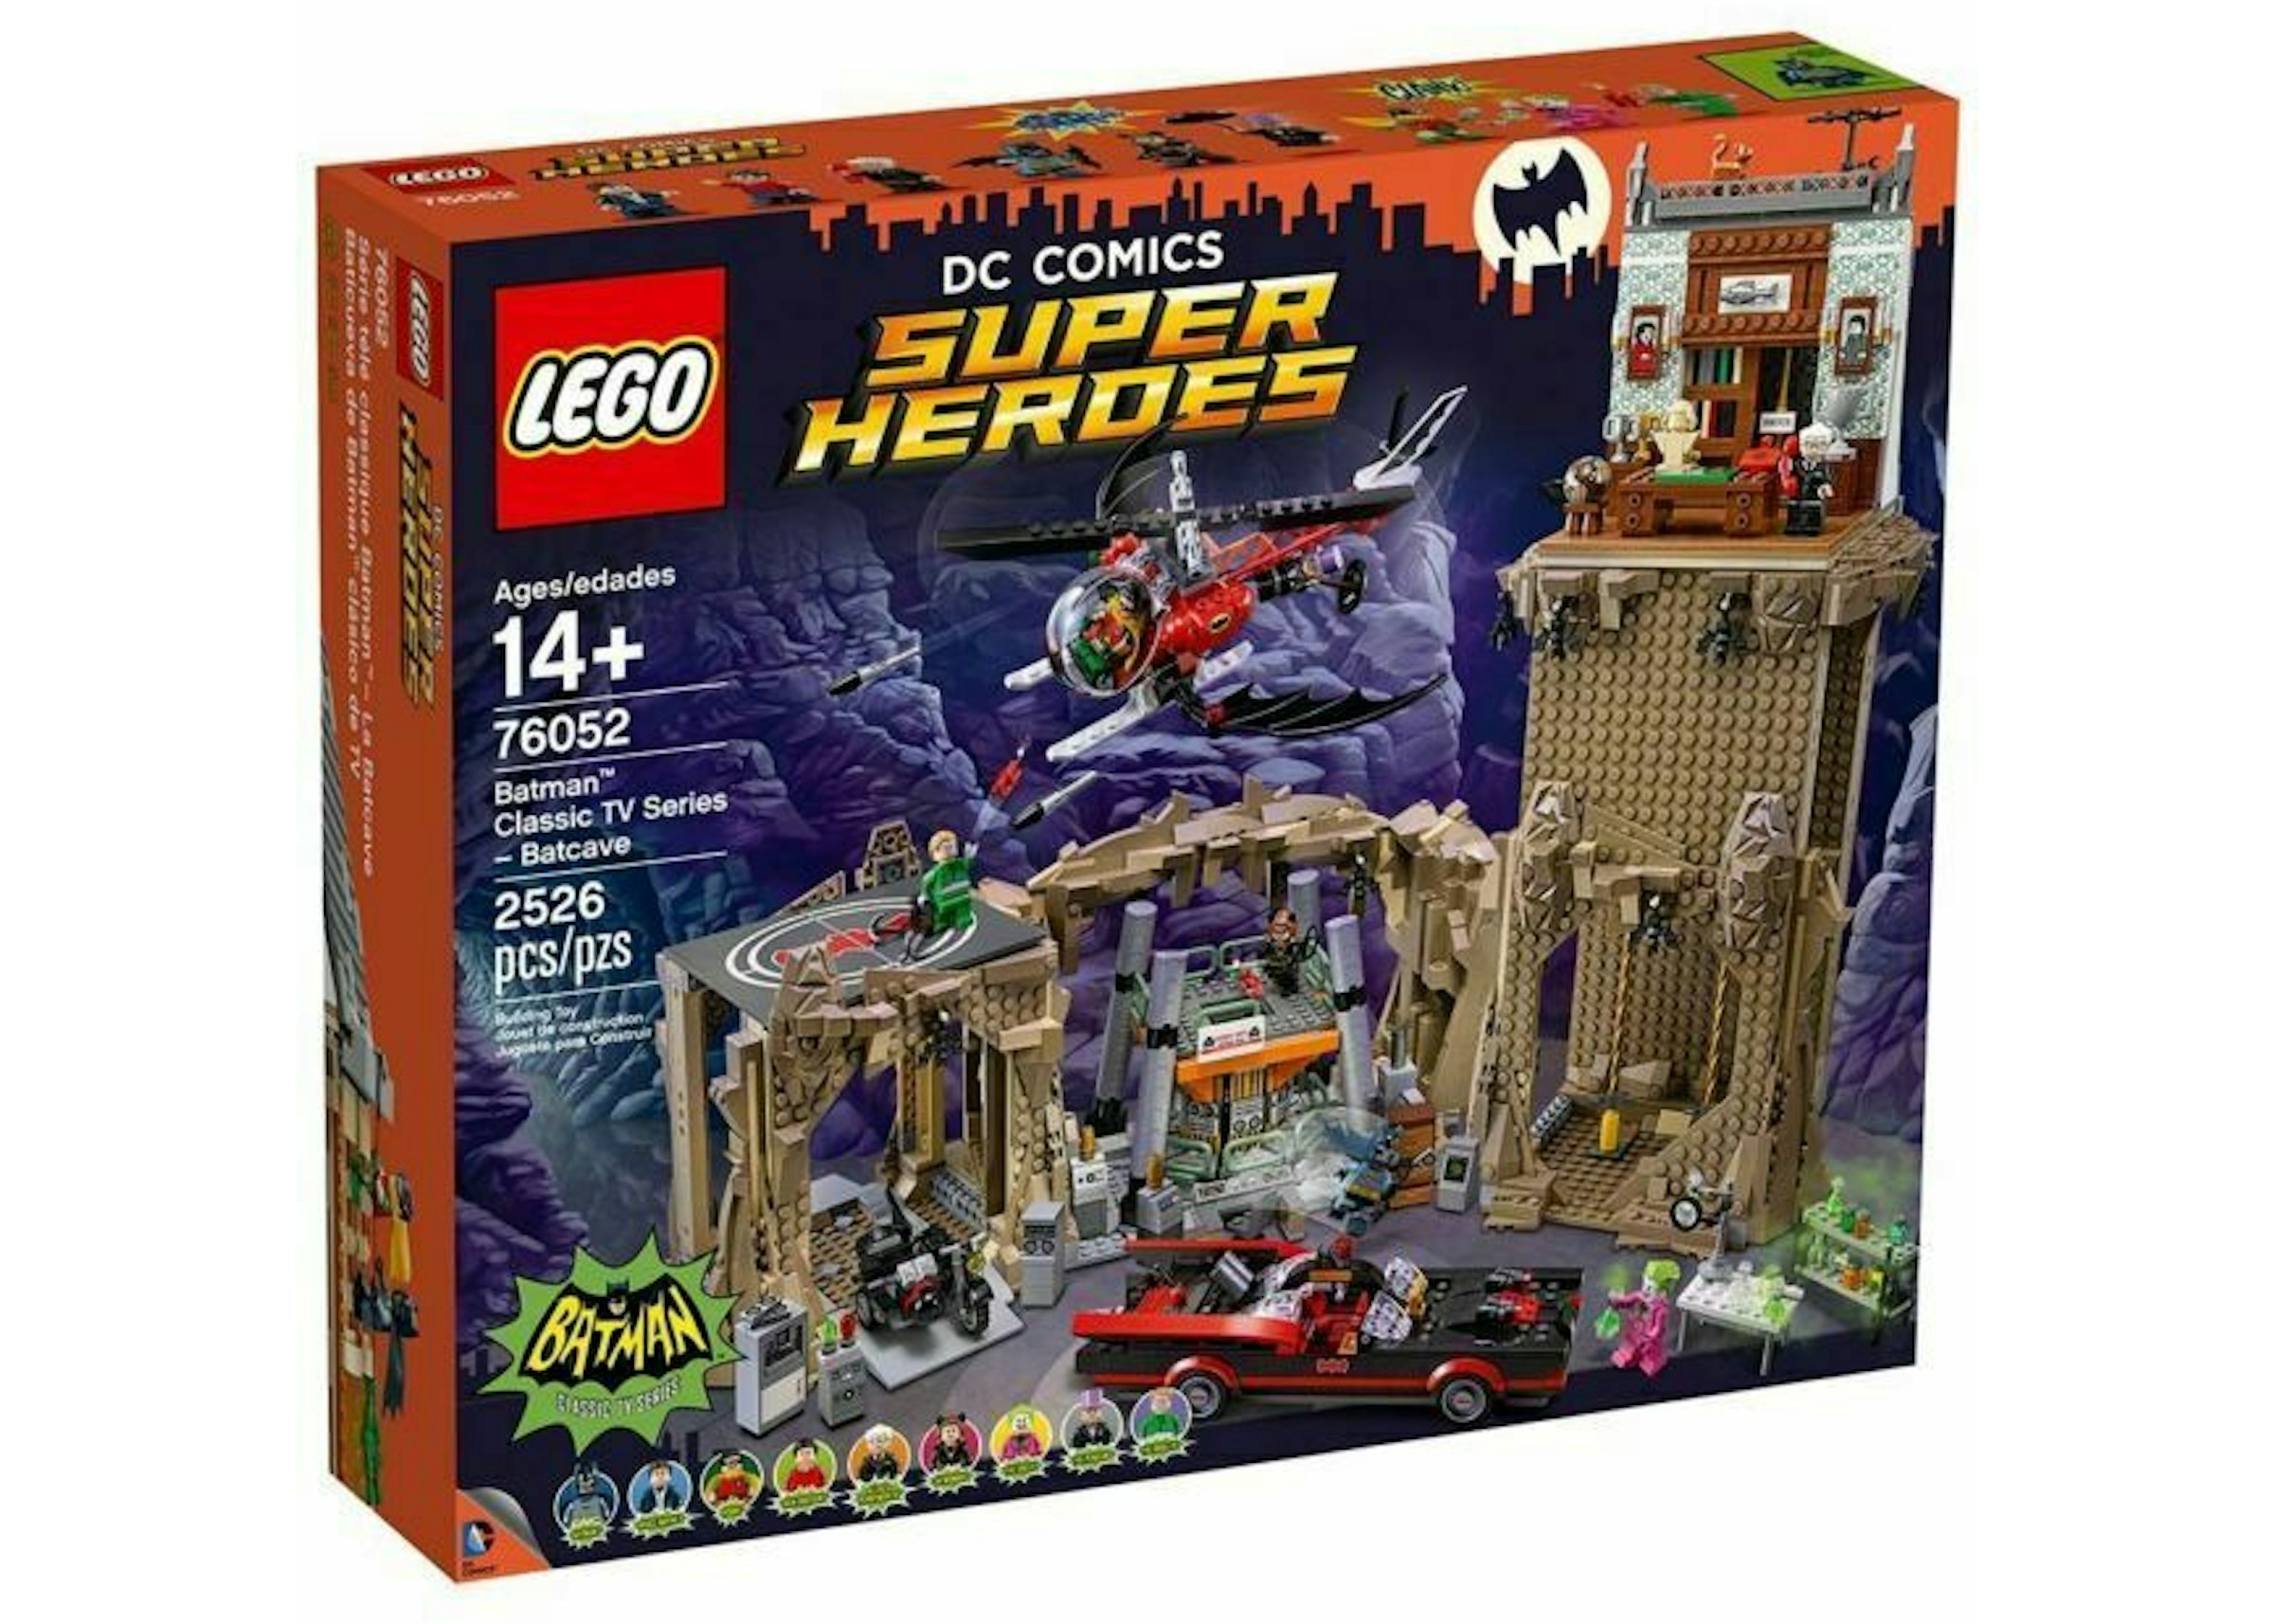 LEGO DC Comics Super Heroes Classic TV Series Batcave Set 76052 - US